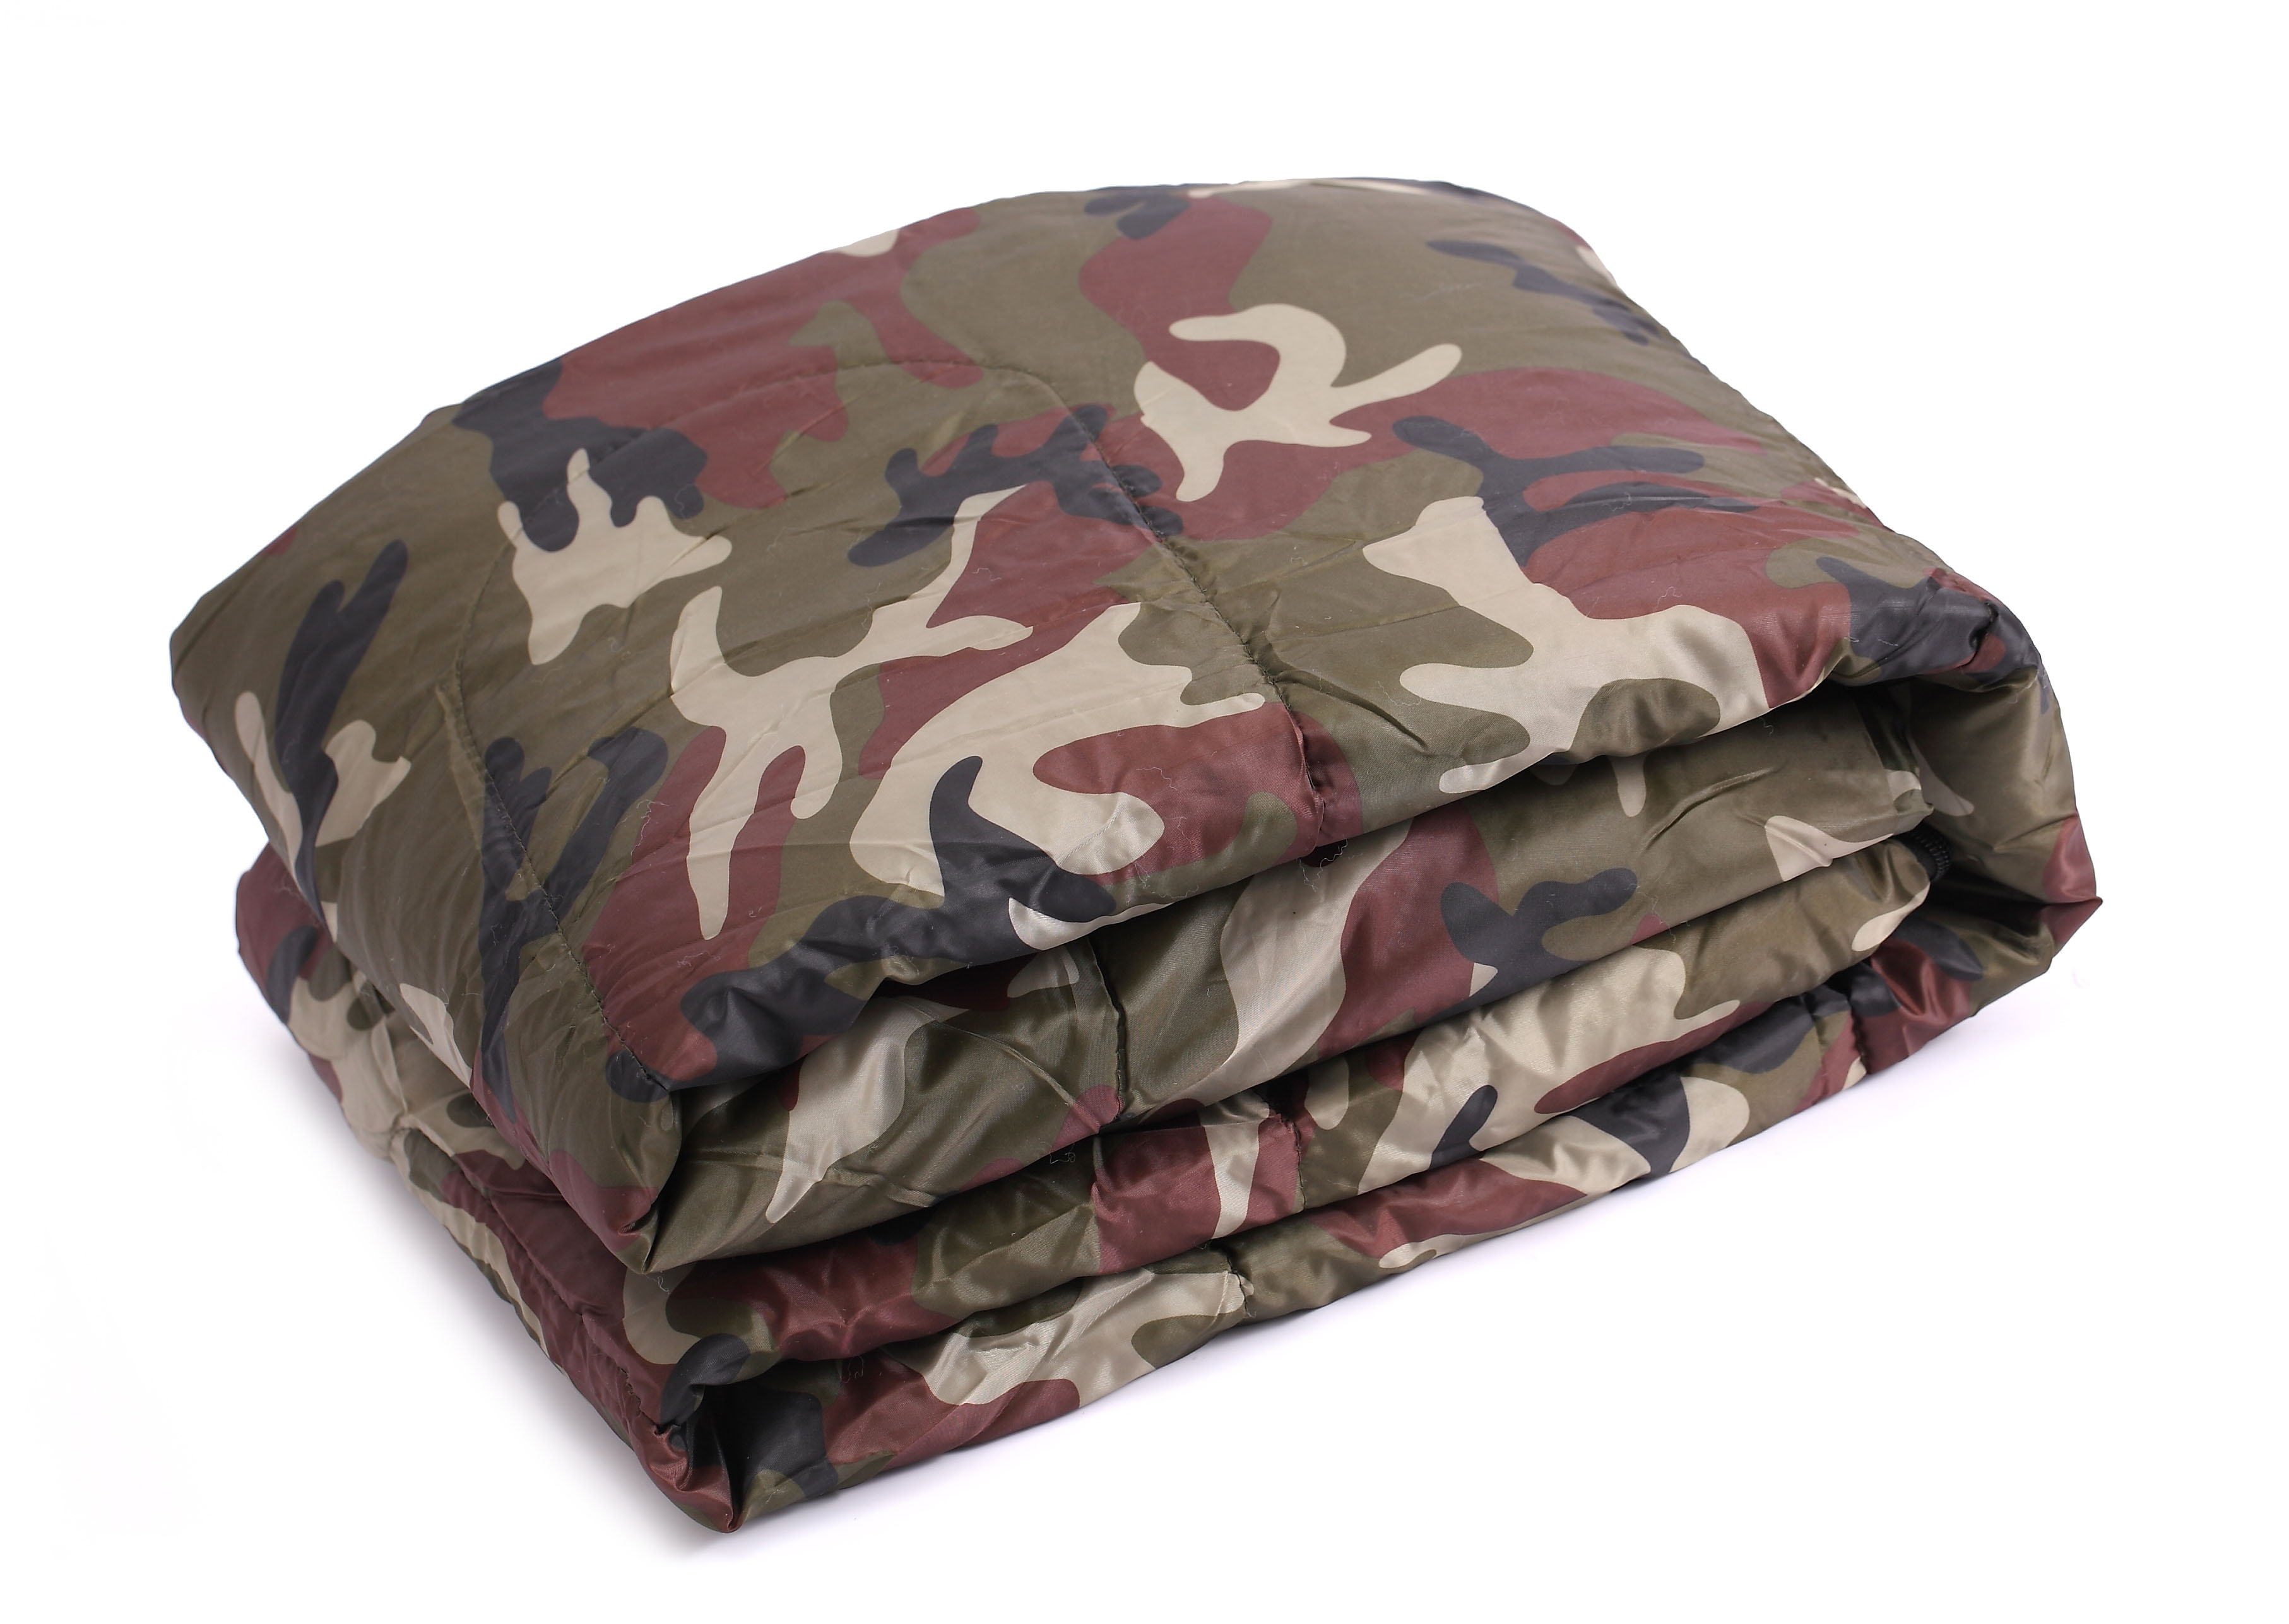 NaturGuard Outdoor warm sleeping bag with hoody